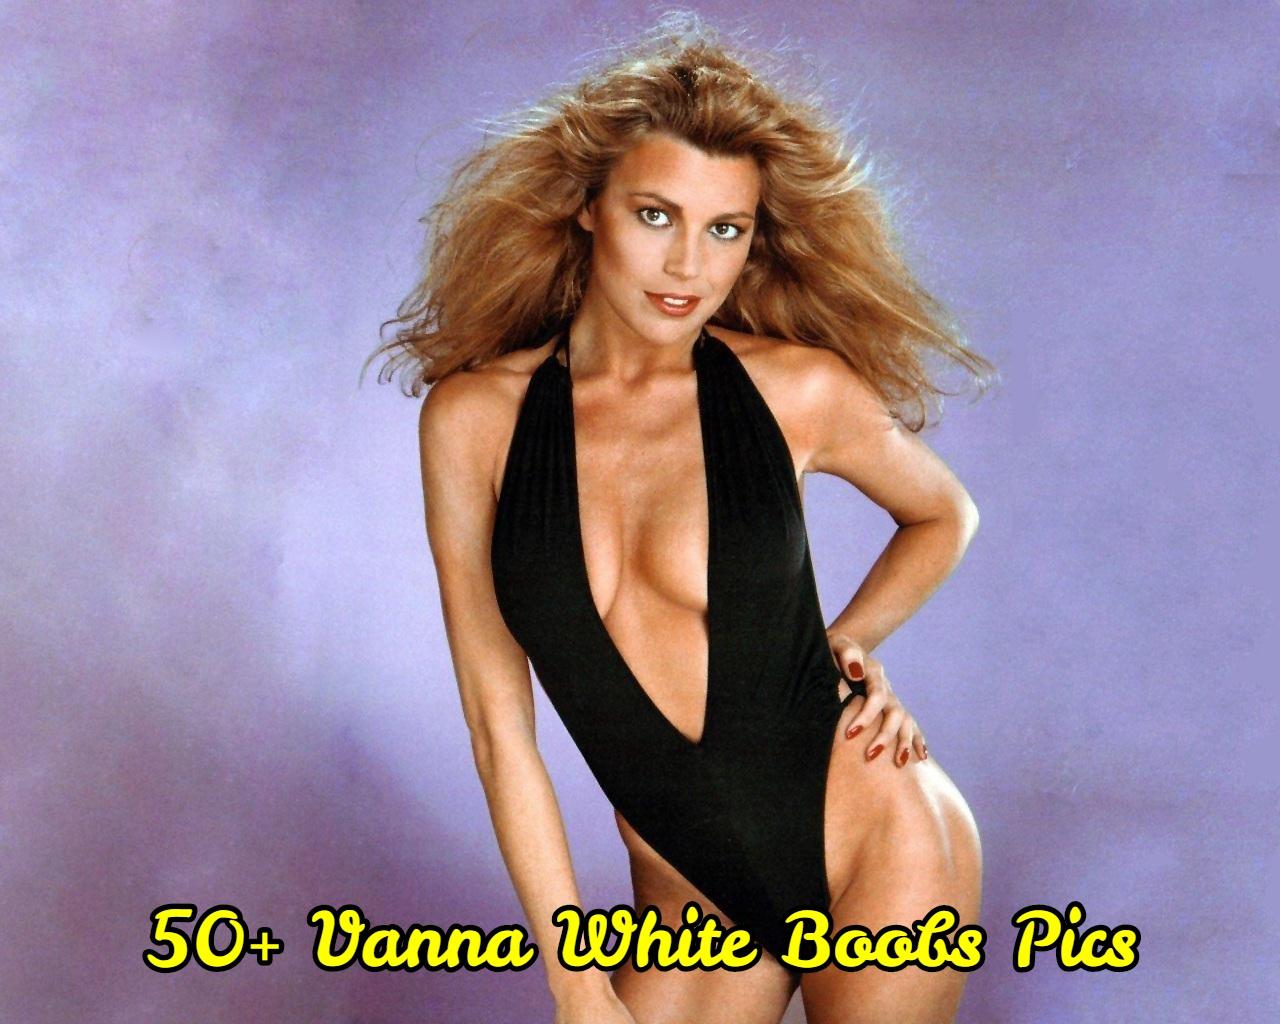 Vanna White's Tits